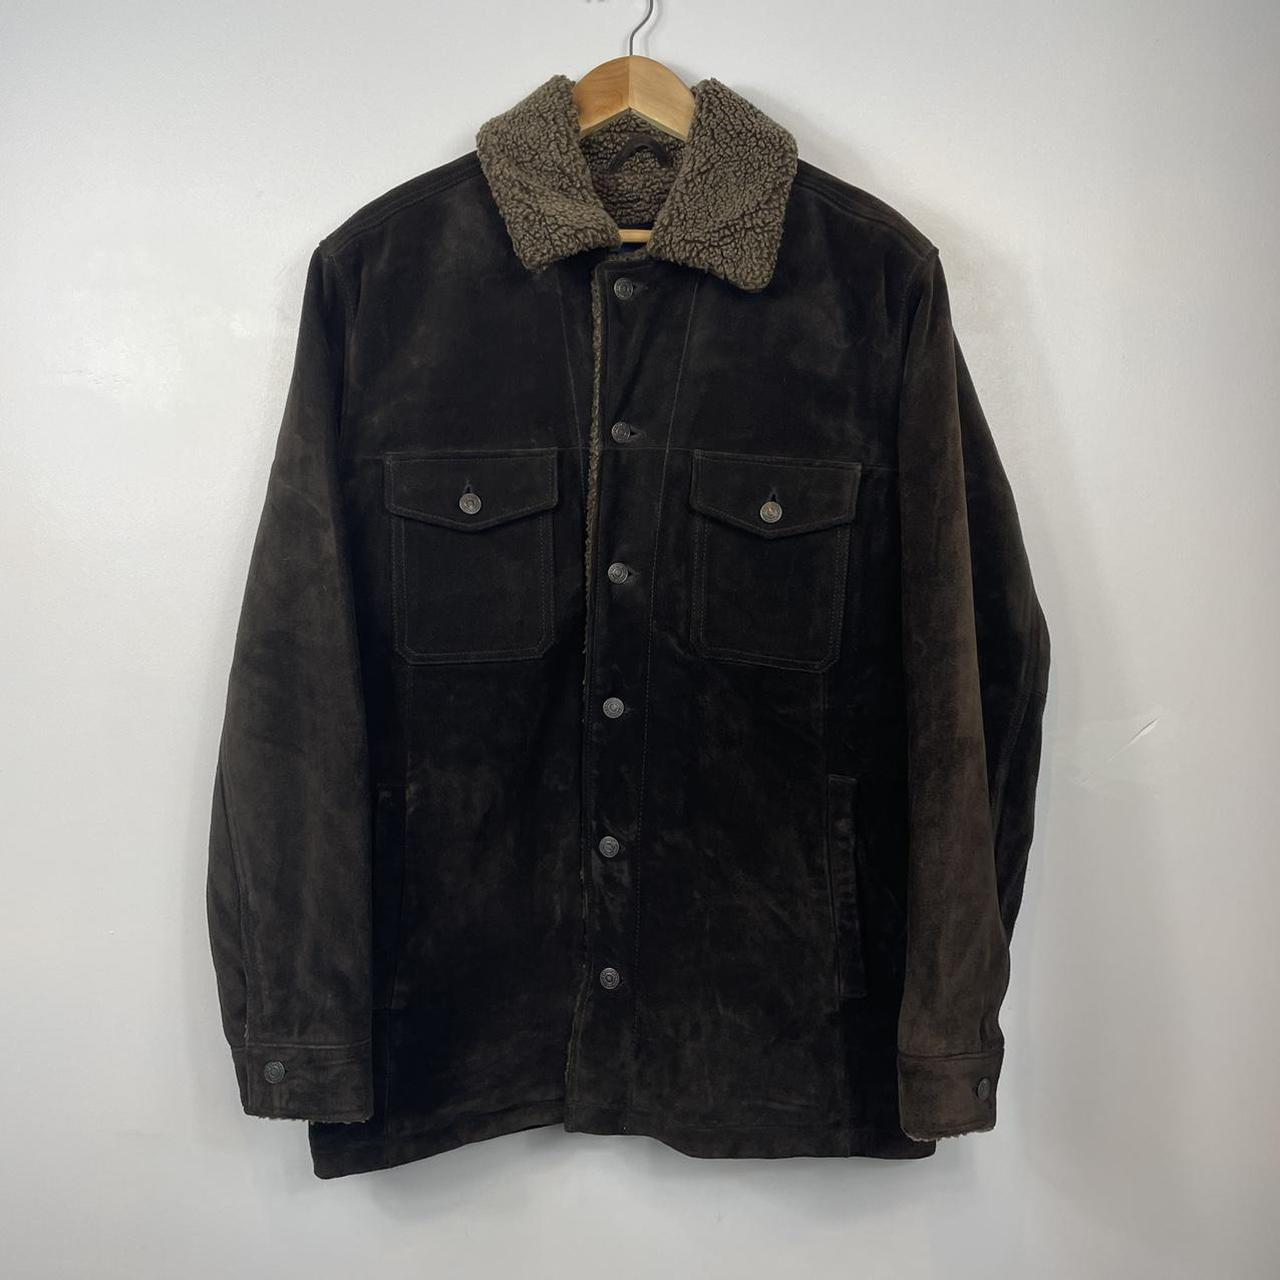 Vintage Gap Suede Brown Jacket with Sheraling... - Depop